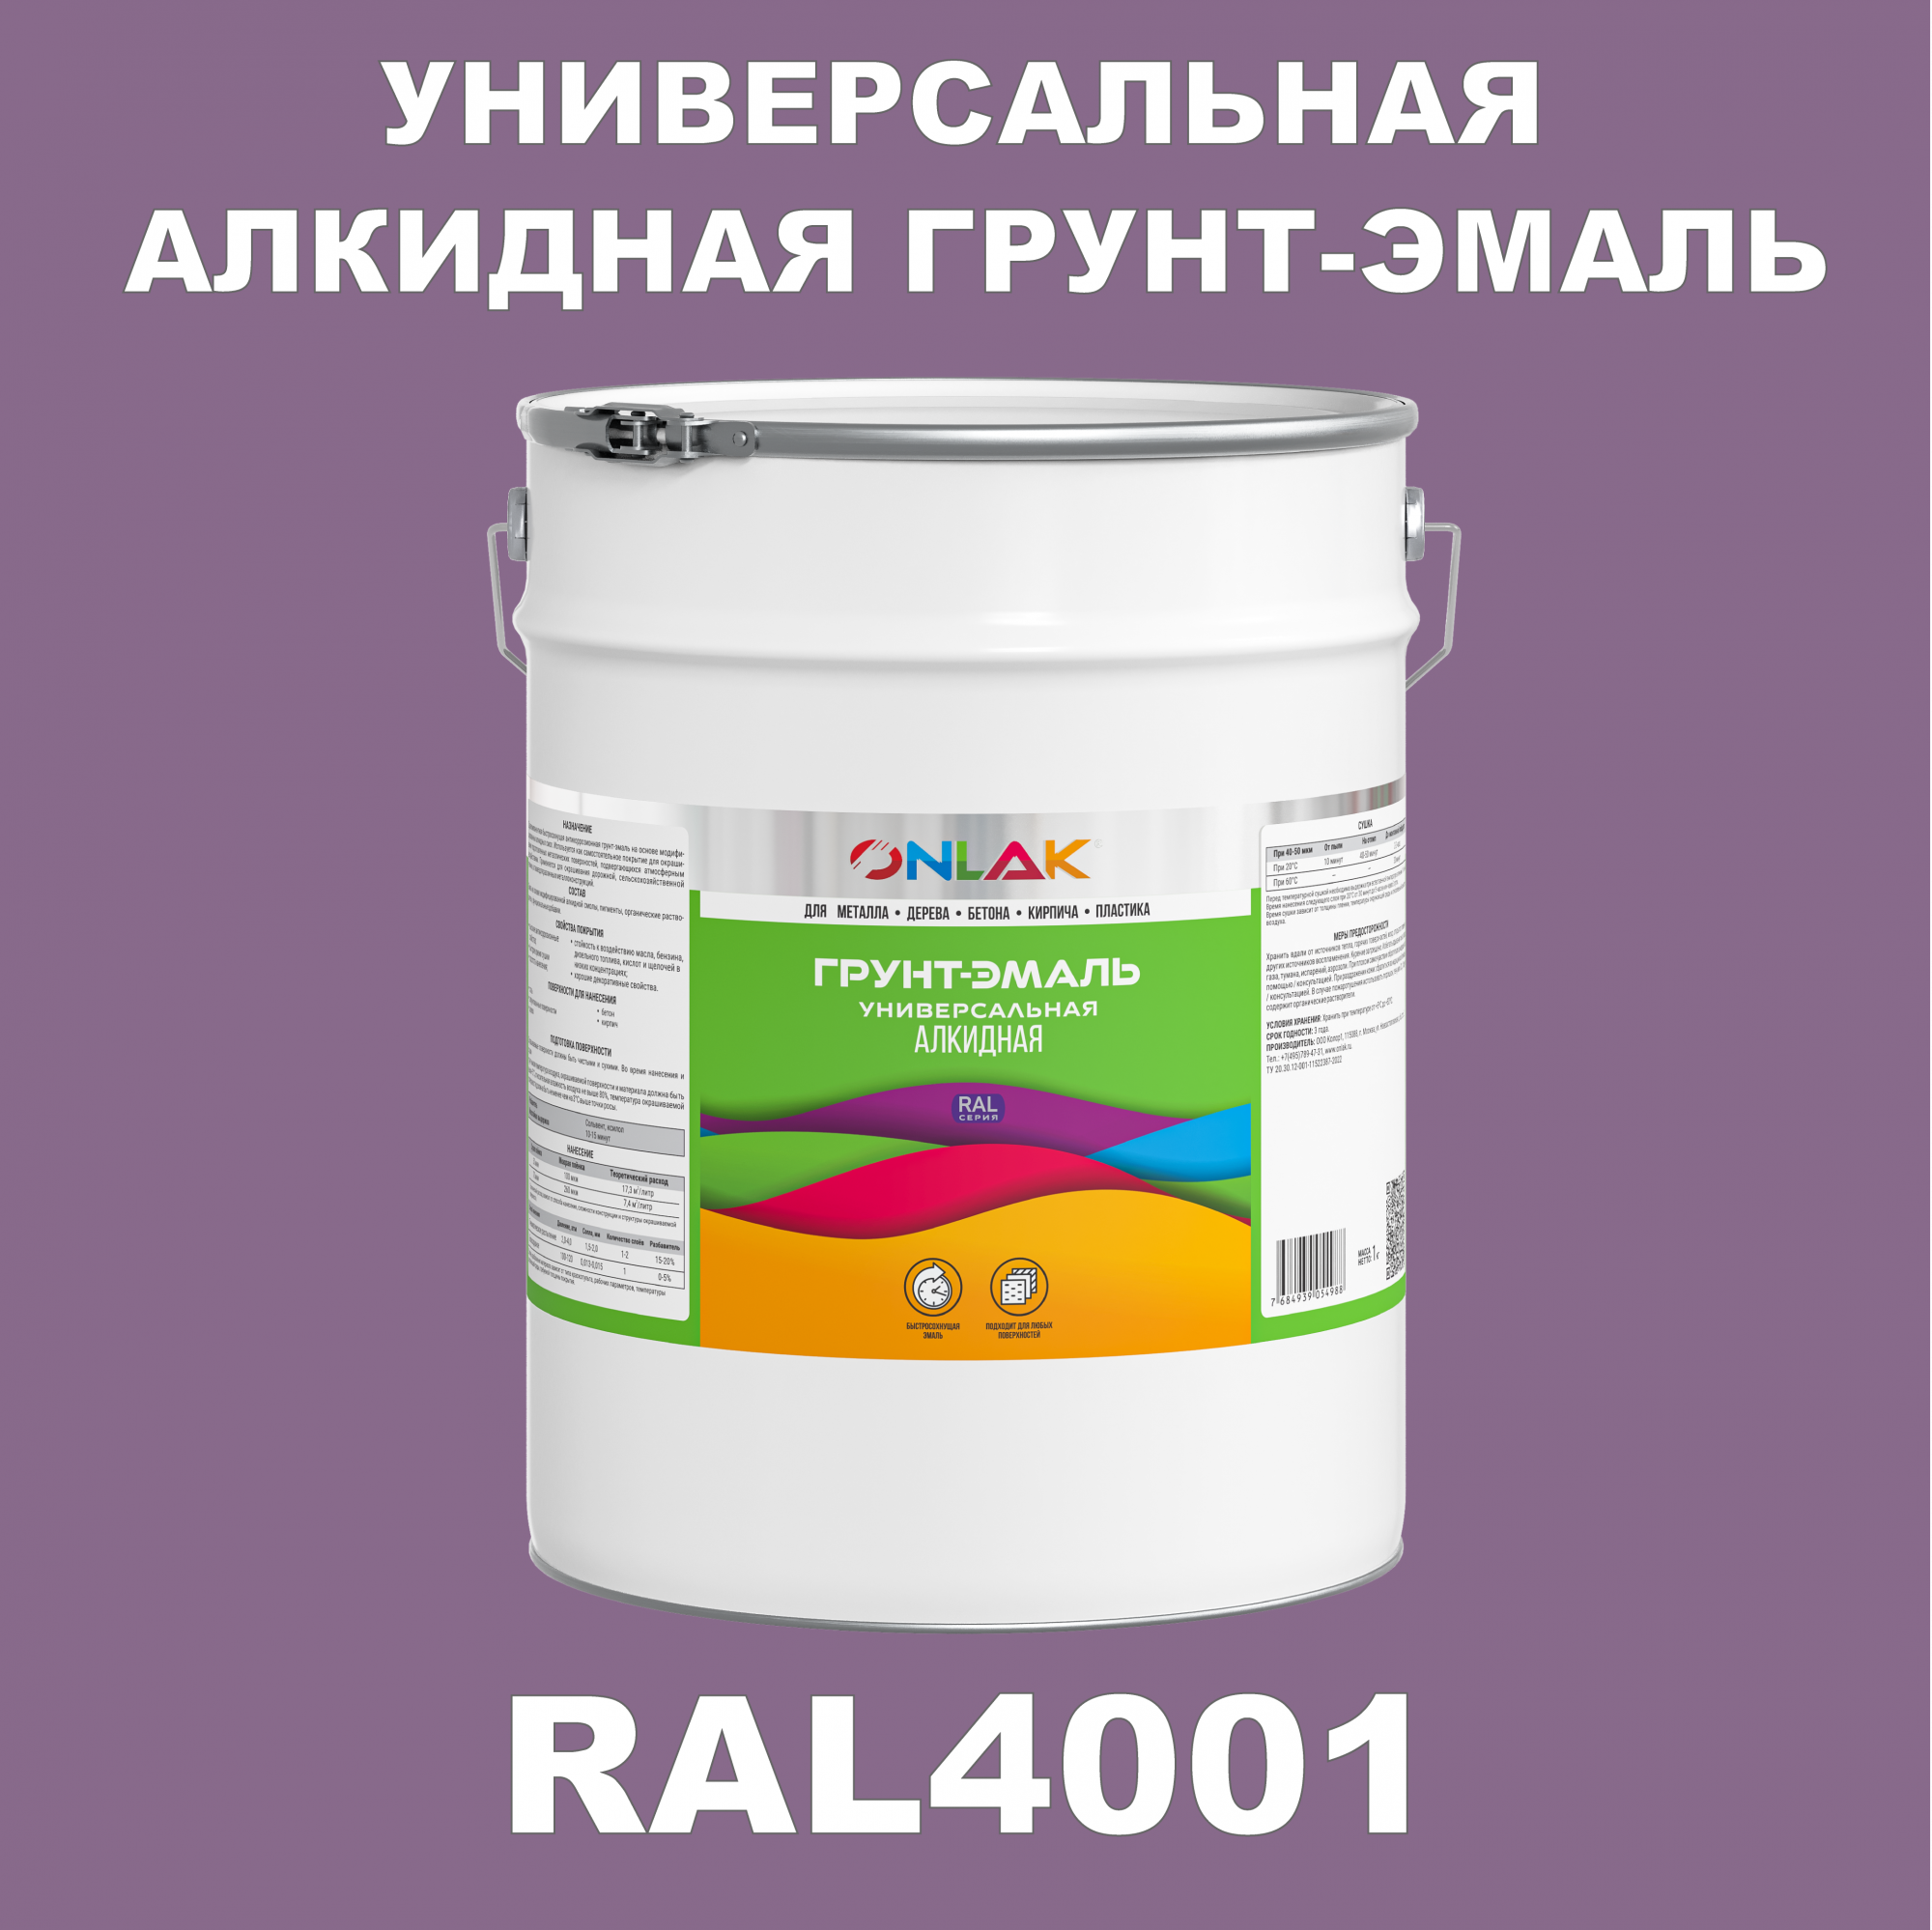 Грунт-эмаль ONLAK 1К RAL4001 антикоррозионная алкидная по металлу по ржавчине 20 кг антикоррозионная грунт эмаль onlak ral4001 фиолетовый 656 мл